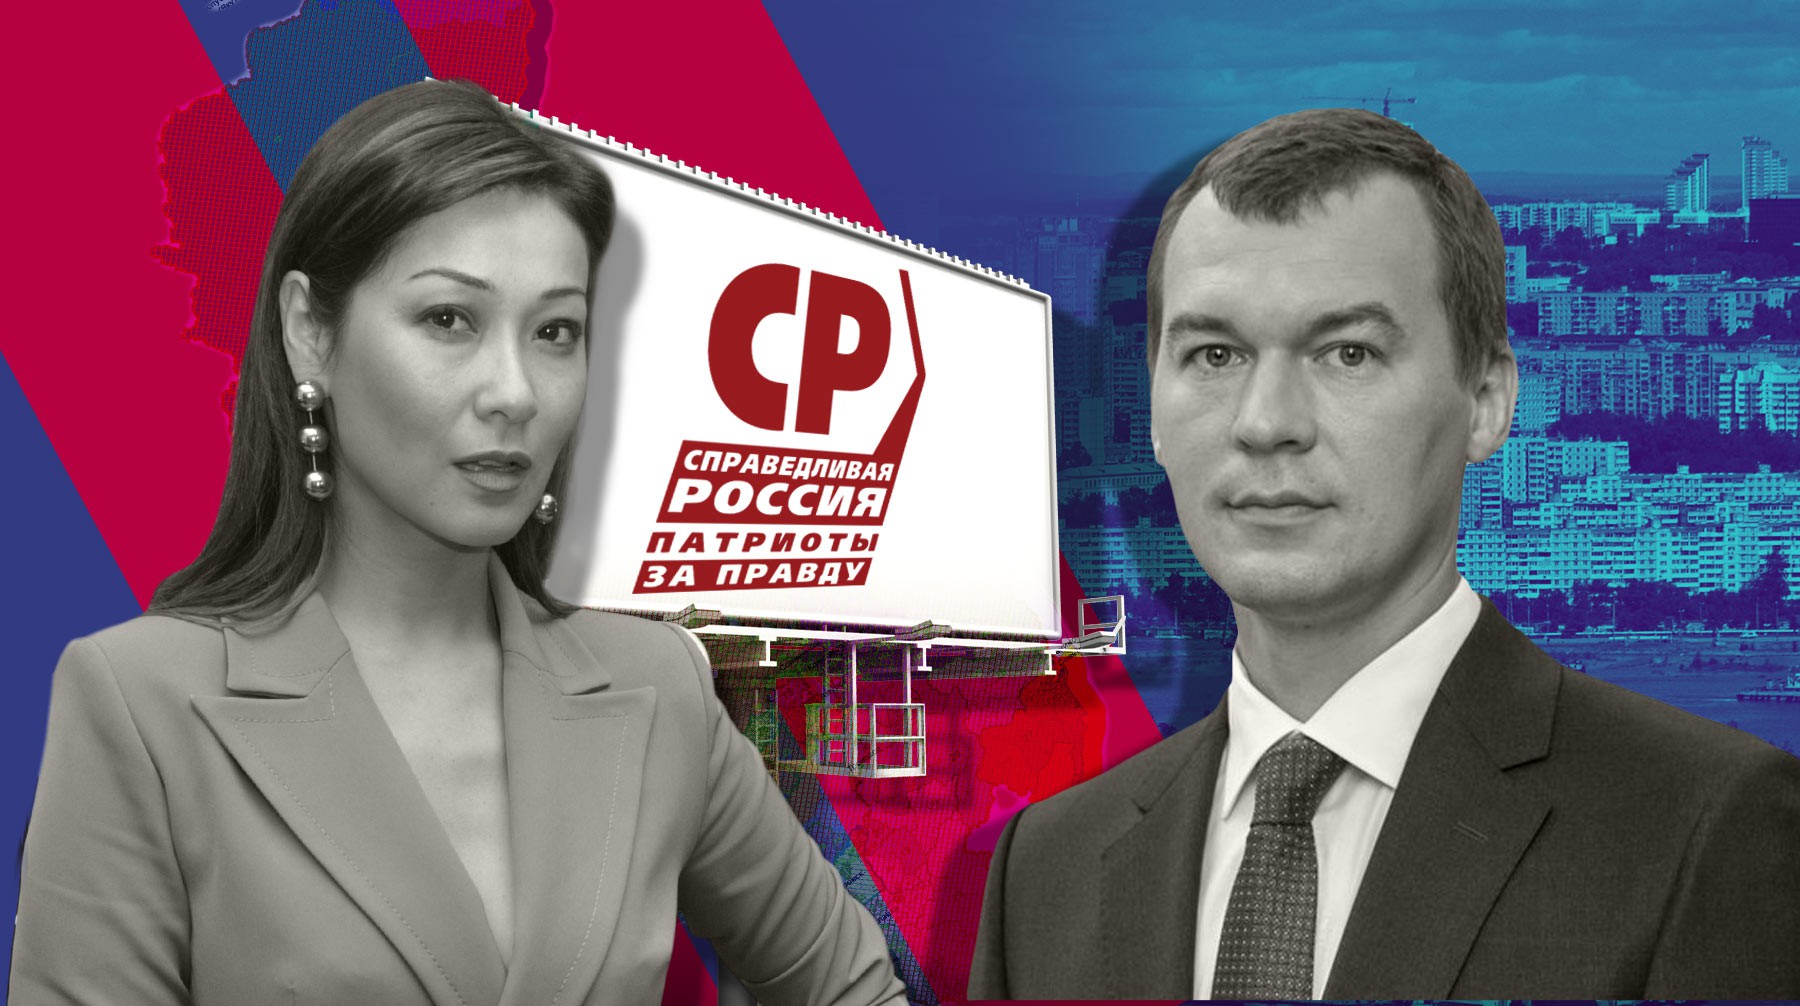 Dailystorm - Два билборда накануне выборов: в Хабаровском крае попытались столкнуть кандидатов в губернаторы